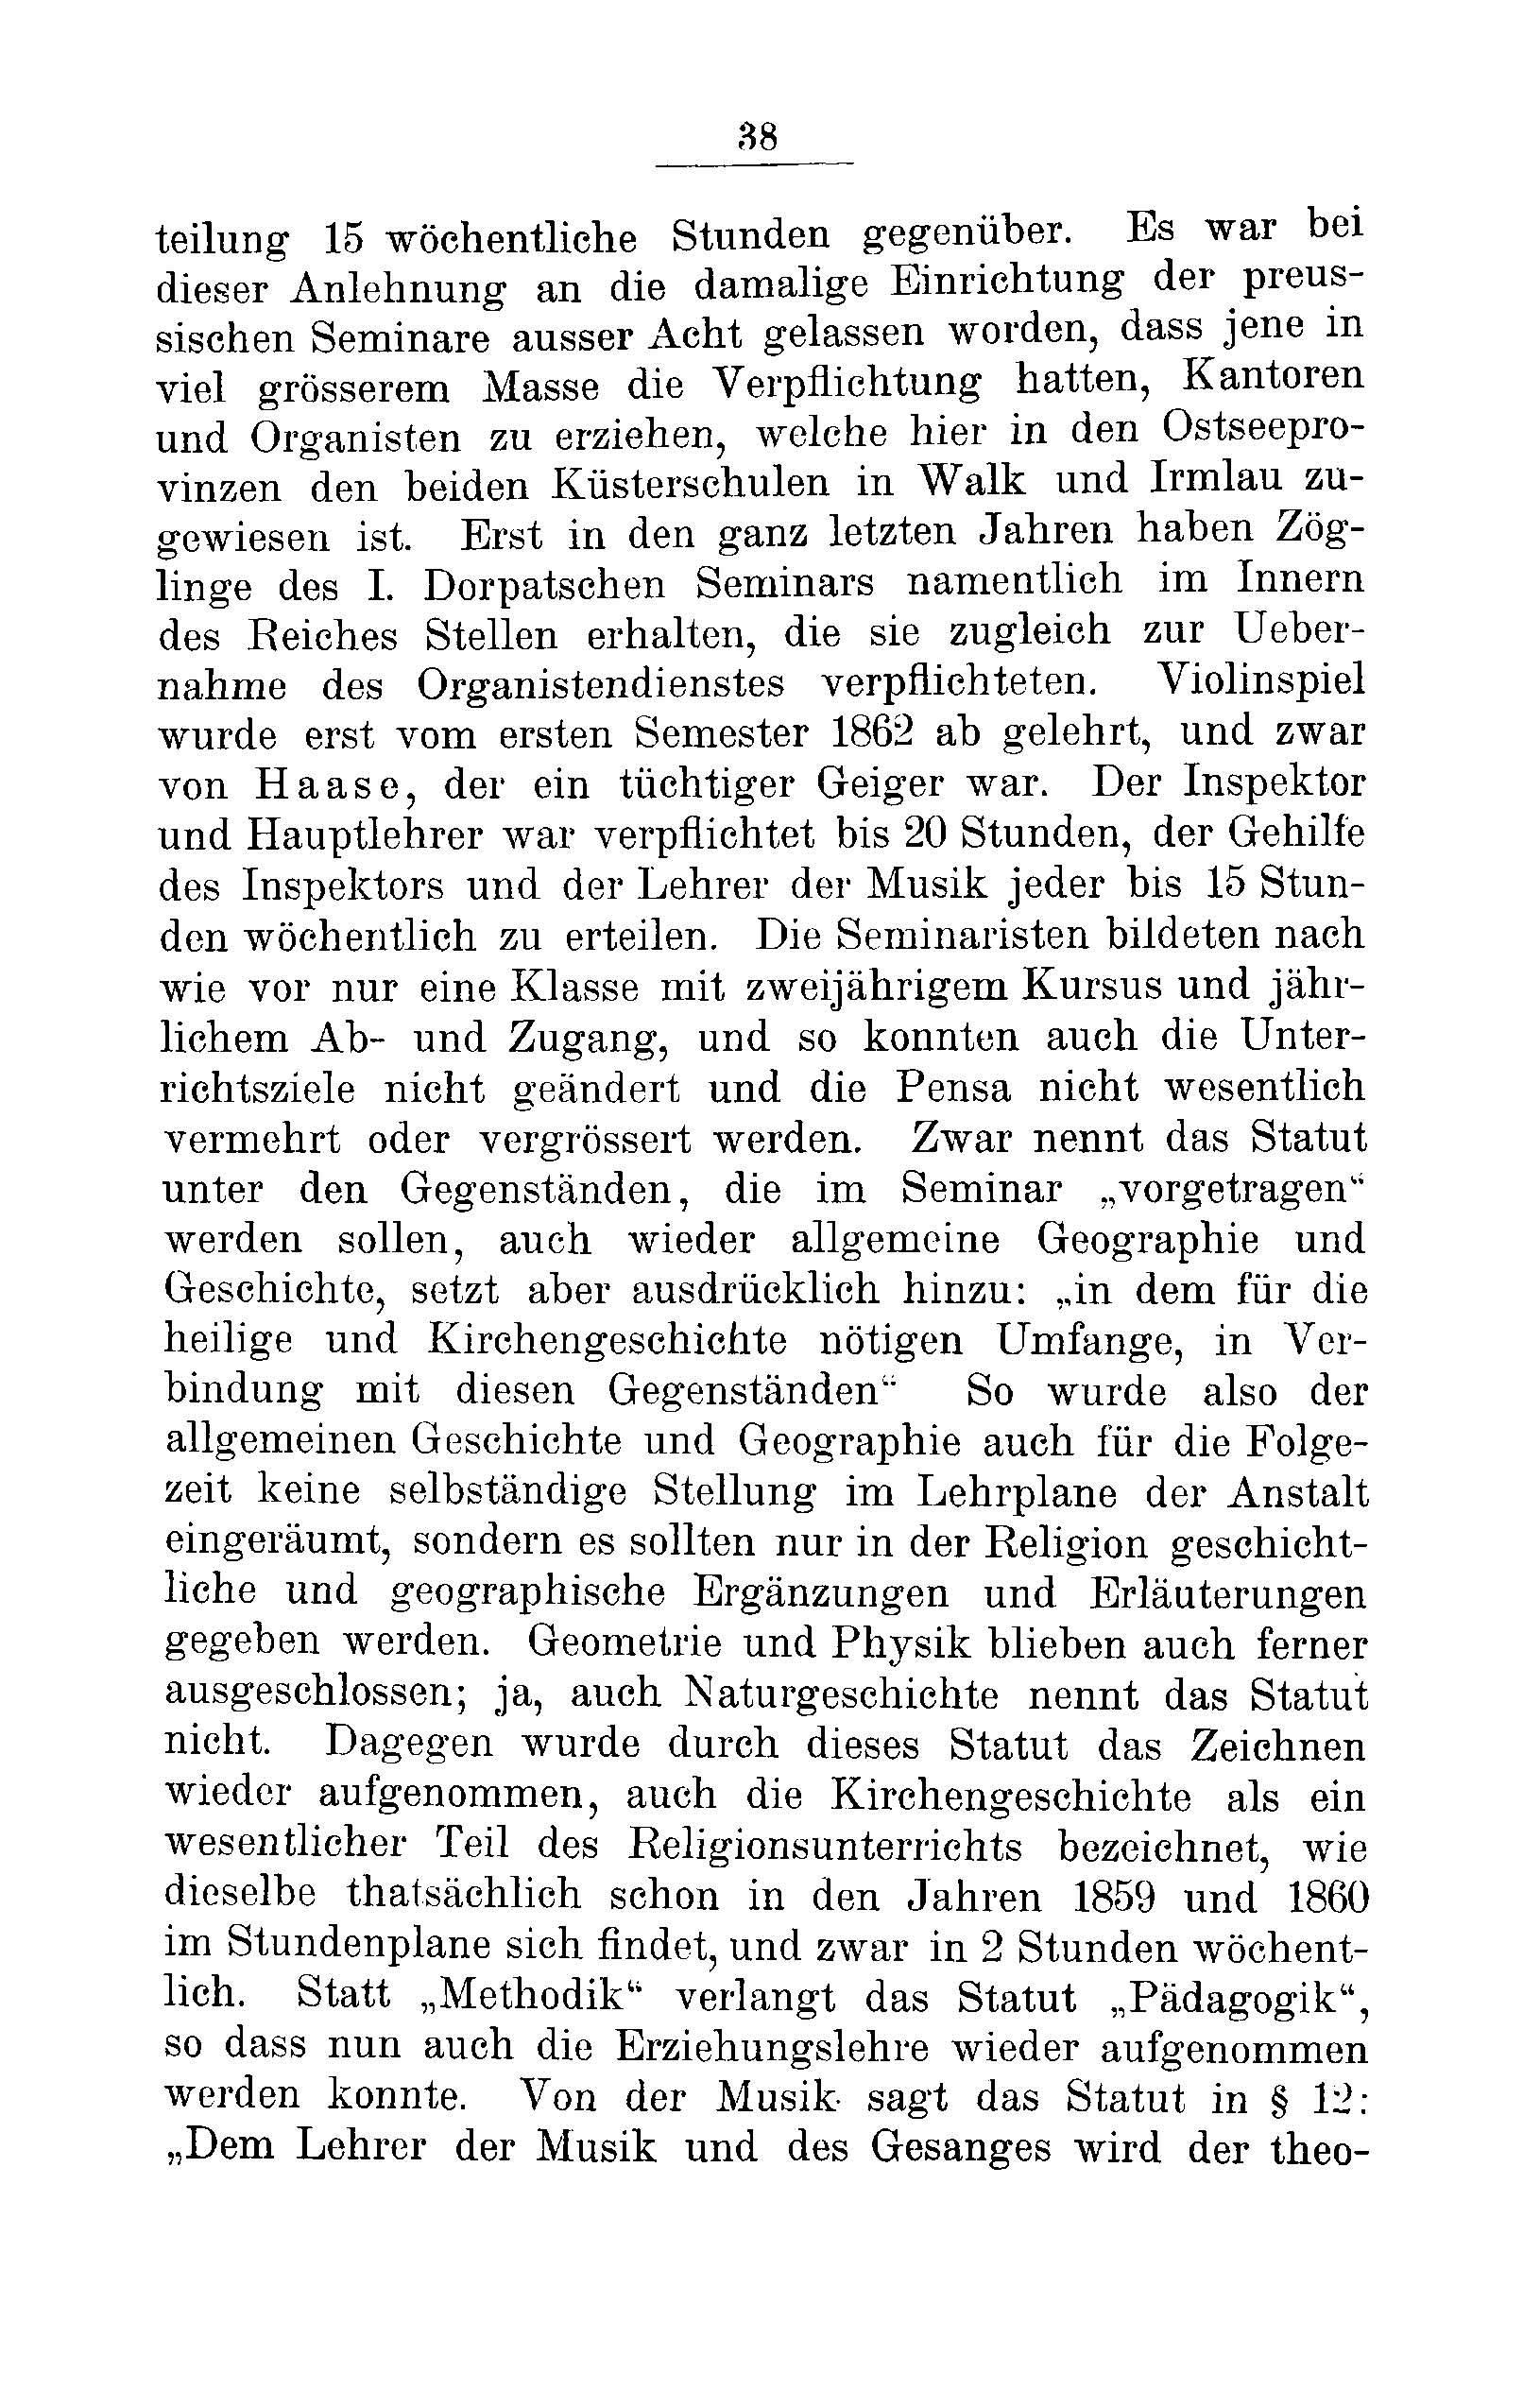 Das Erste Dorpatsche Lehrer-Seminar (1890) | 40. Põhitekst